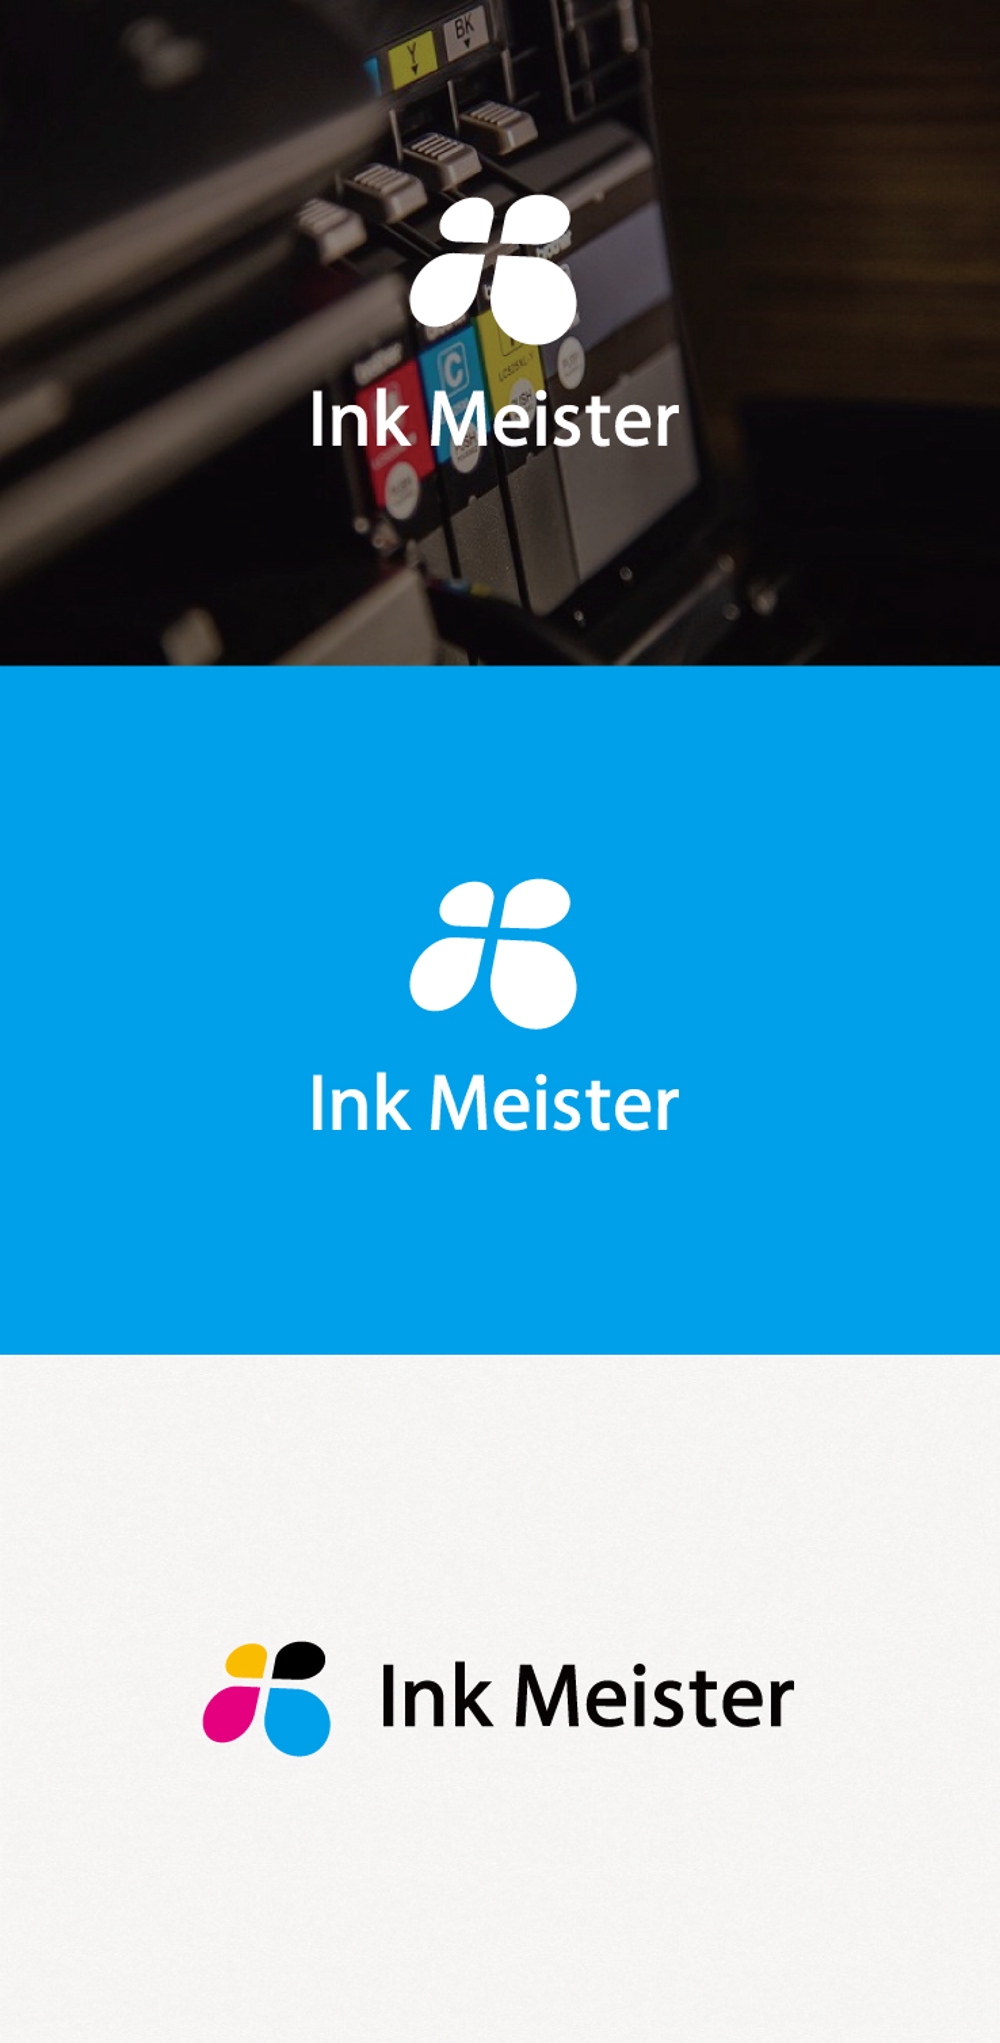 互換インク・詰め替えインクを扱うブランドのロゴマーク作成依頼